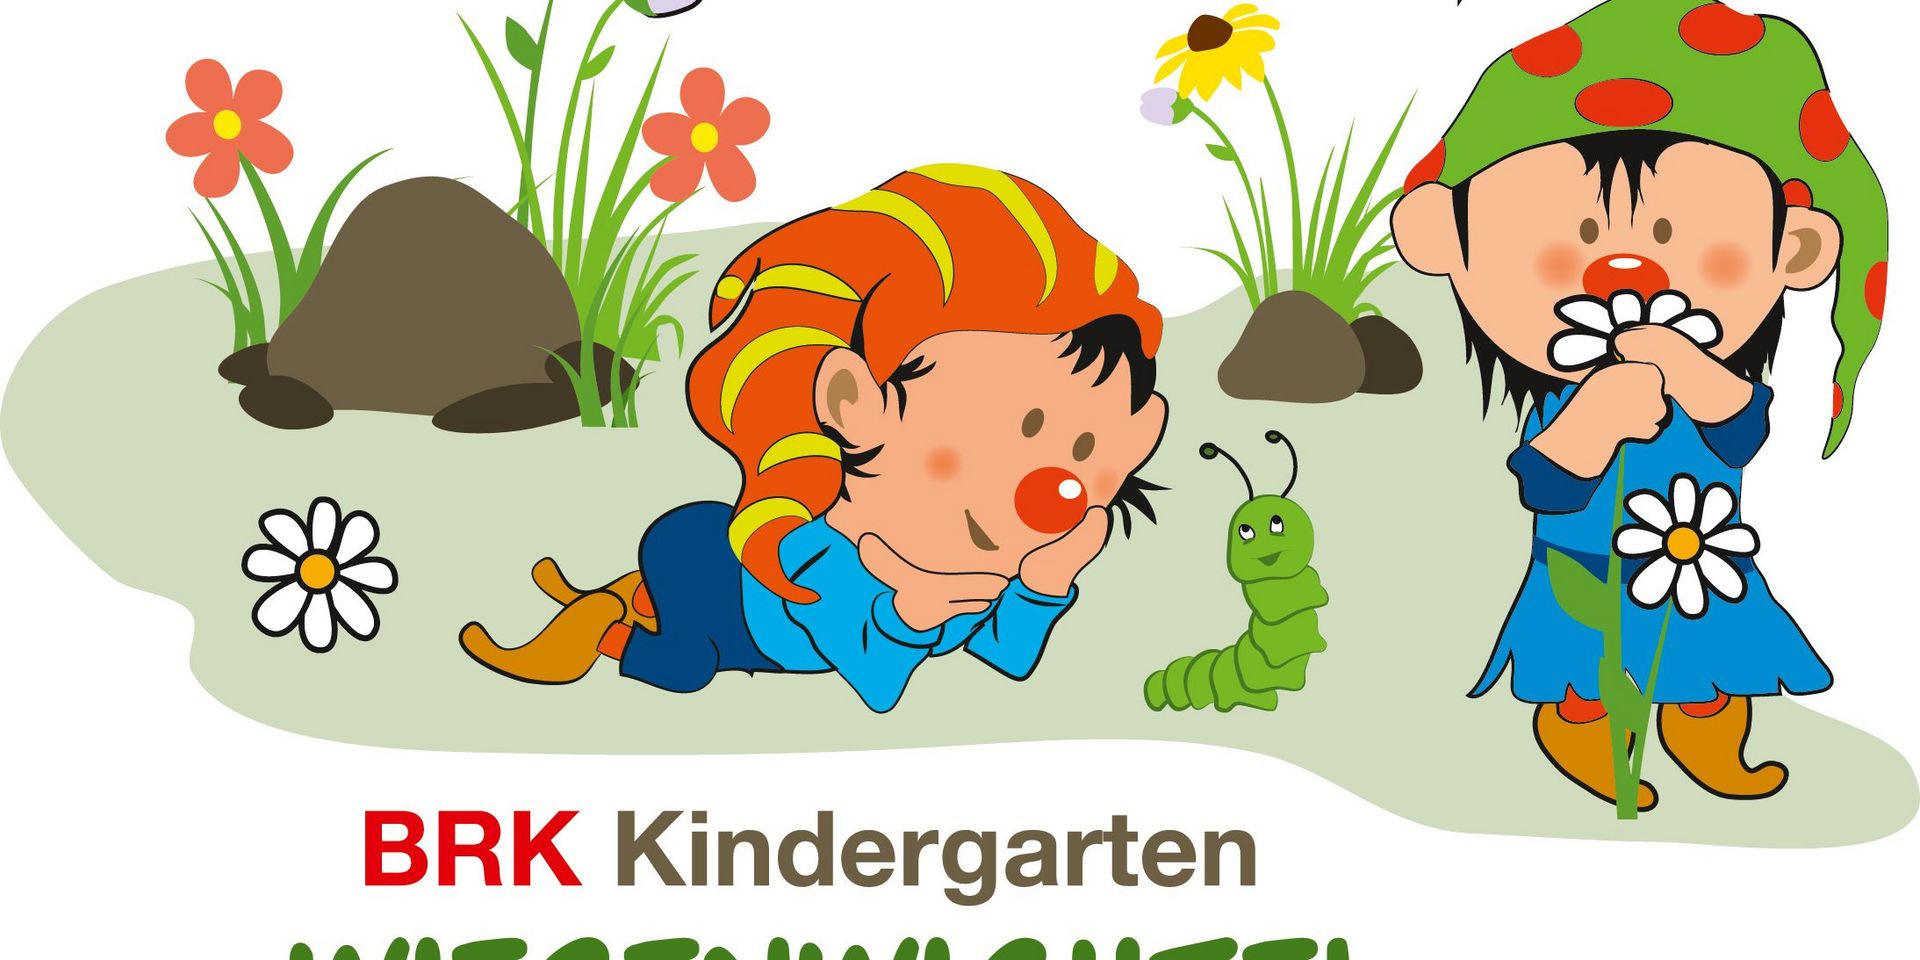 Logo BRK Kindergartens Wiesenwichtel